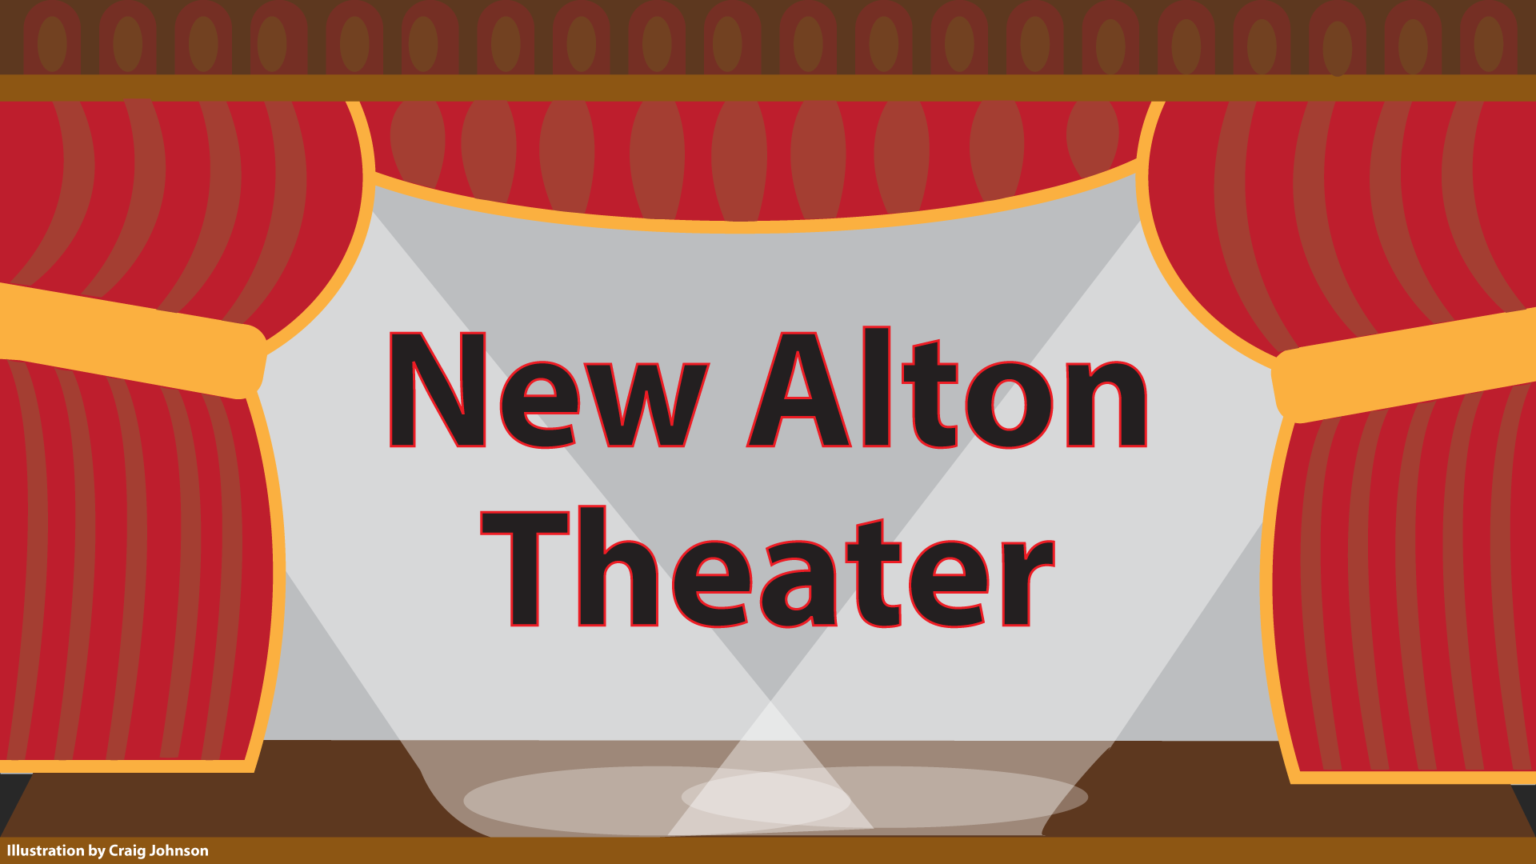 New Movie Theater Opens at Alton Square Mall – The Bridge